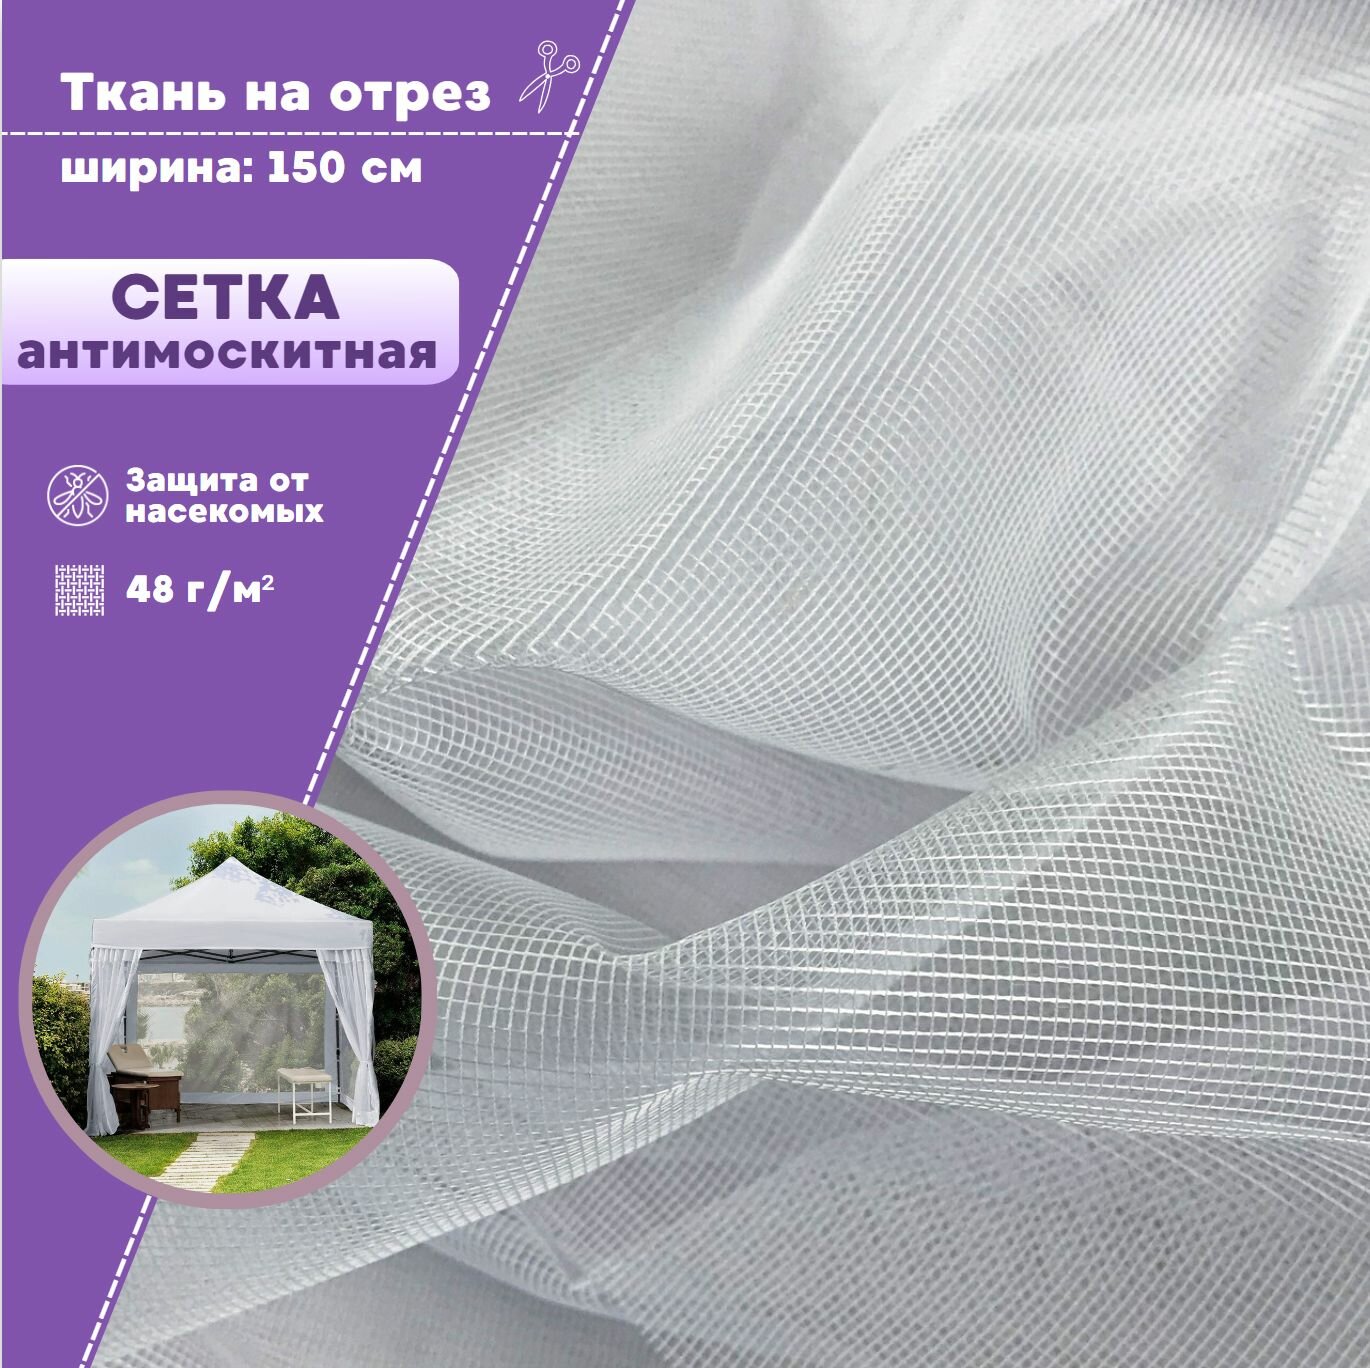 Ткань Сетка Антимоскитная полиэфирная/москитная штора цв. белый пл. 48 г/м2 ш-150 см на отрез цена за пог. метр